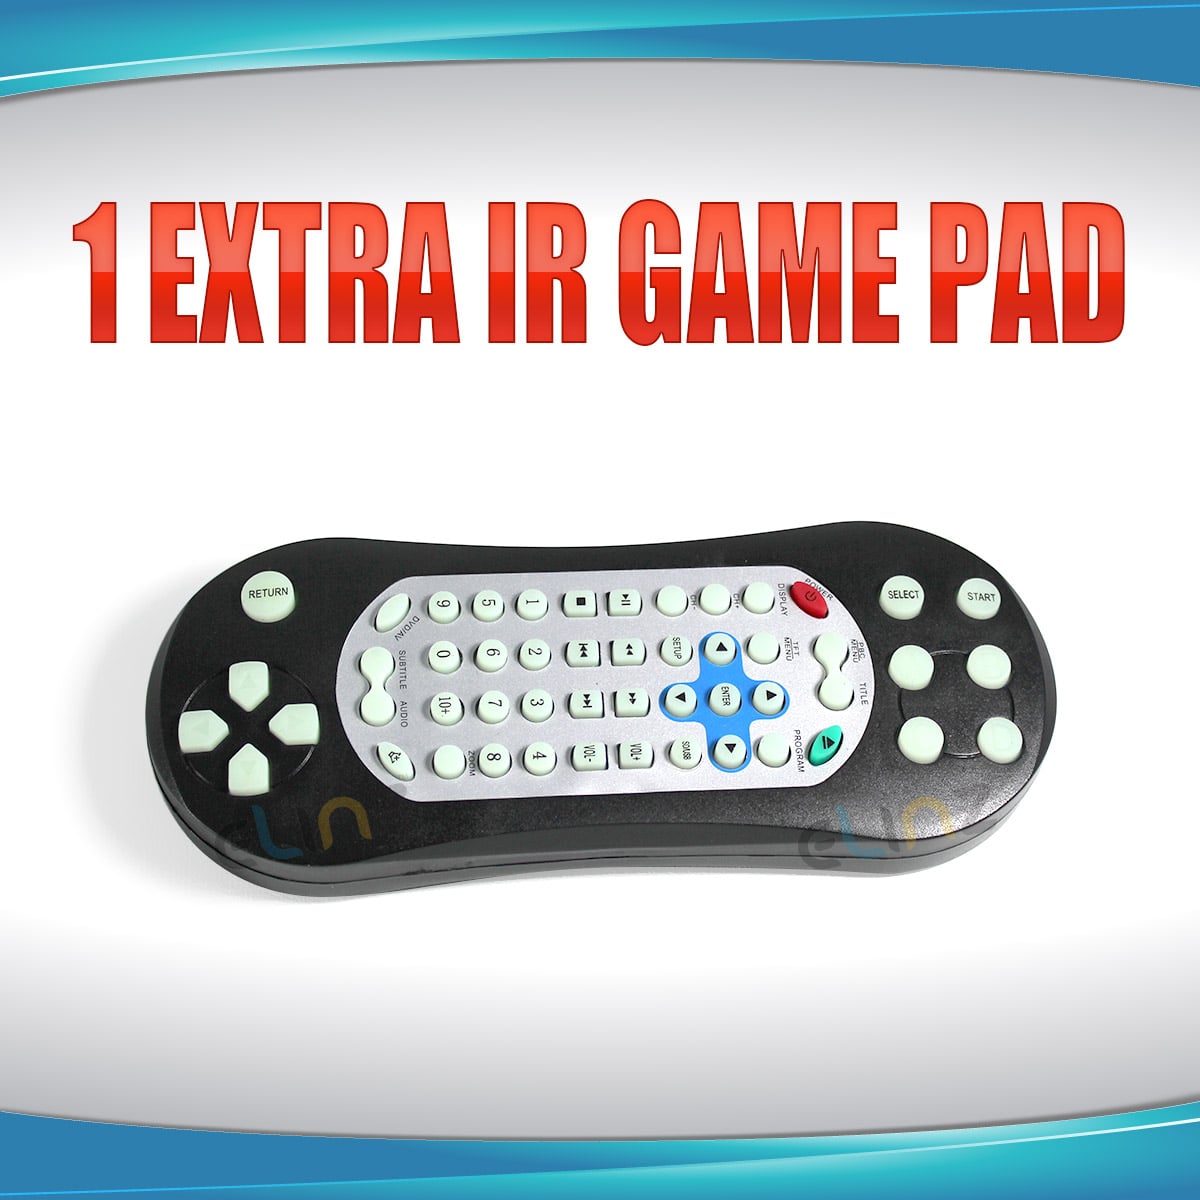 Elinz 1 extra IR Game Pad Wireless